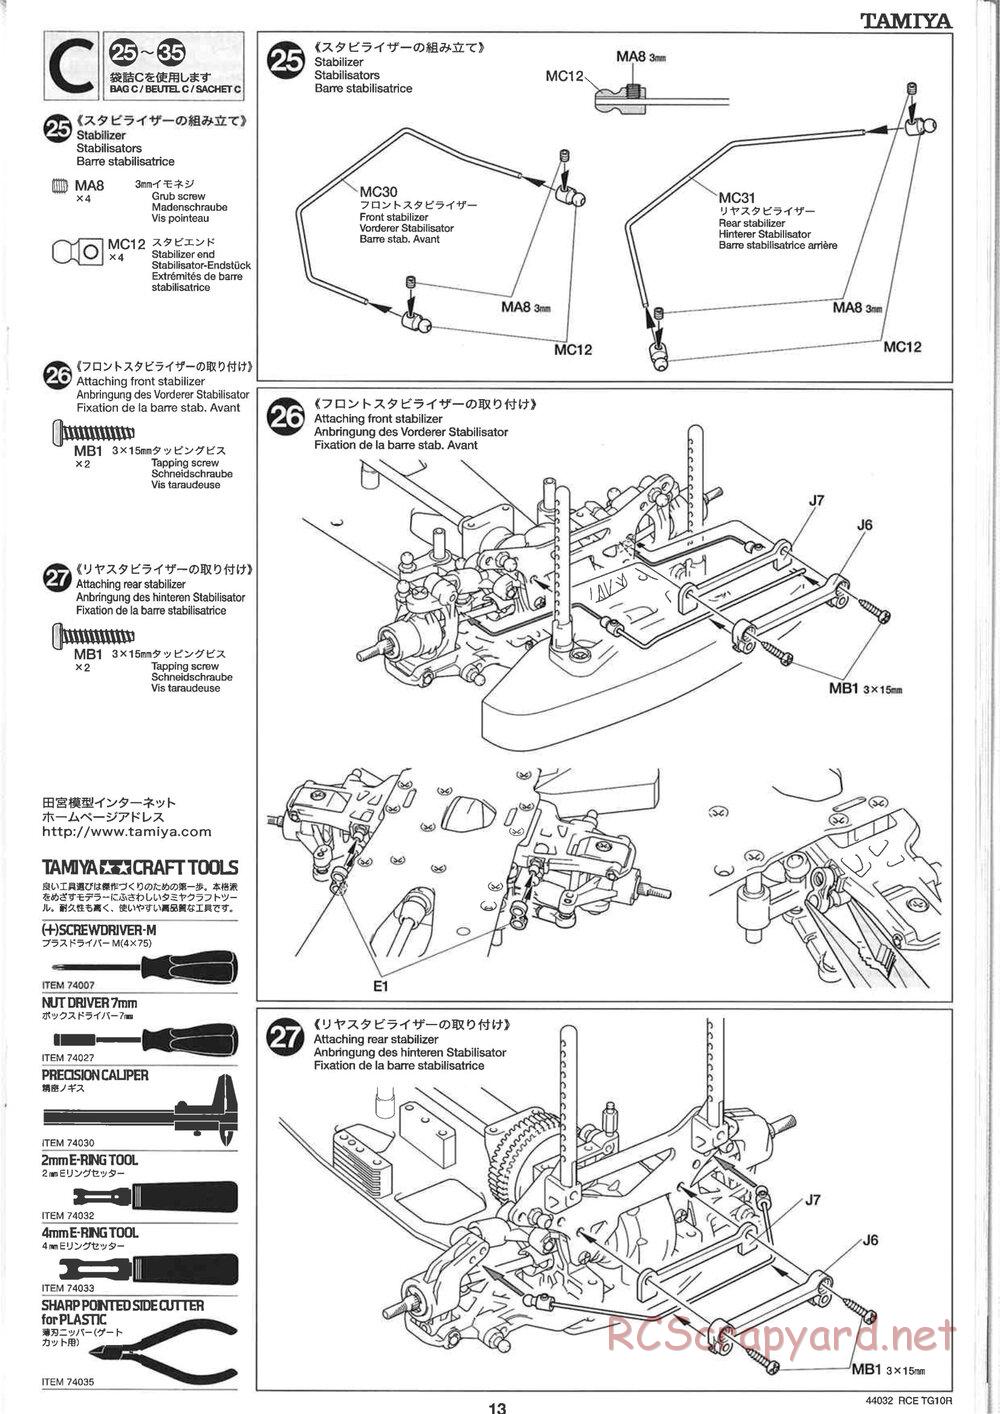 Tamiya - TG10R Chassis - Manual - Page 13